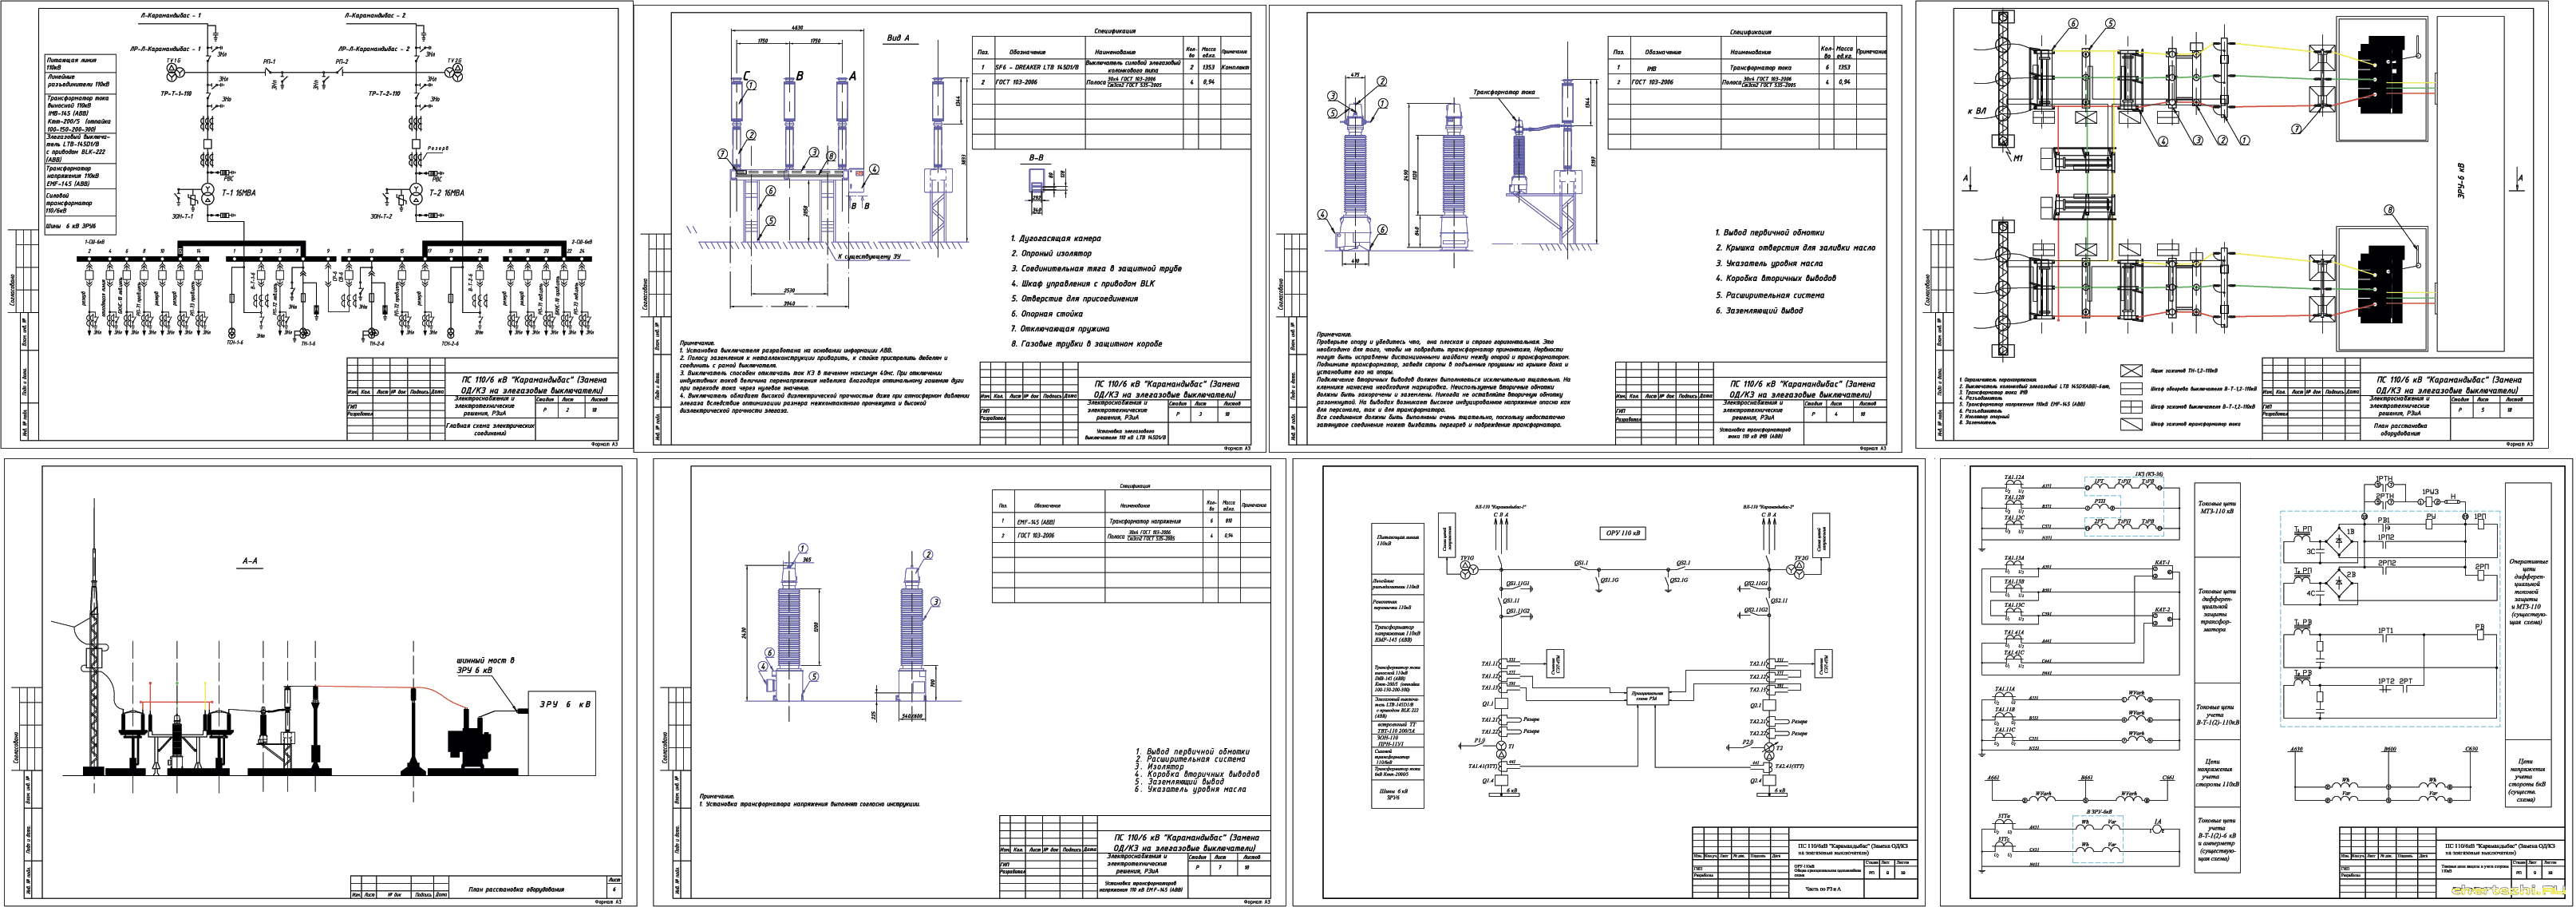 Замена ОД/КЗ-110 кВ на элегазовые выключатели на ПС 110/6 кВ Карамандыбас